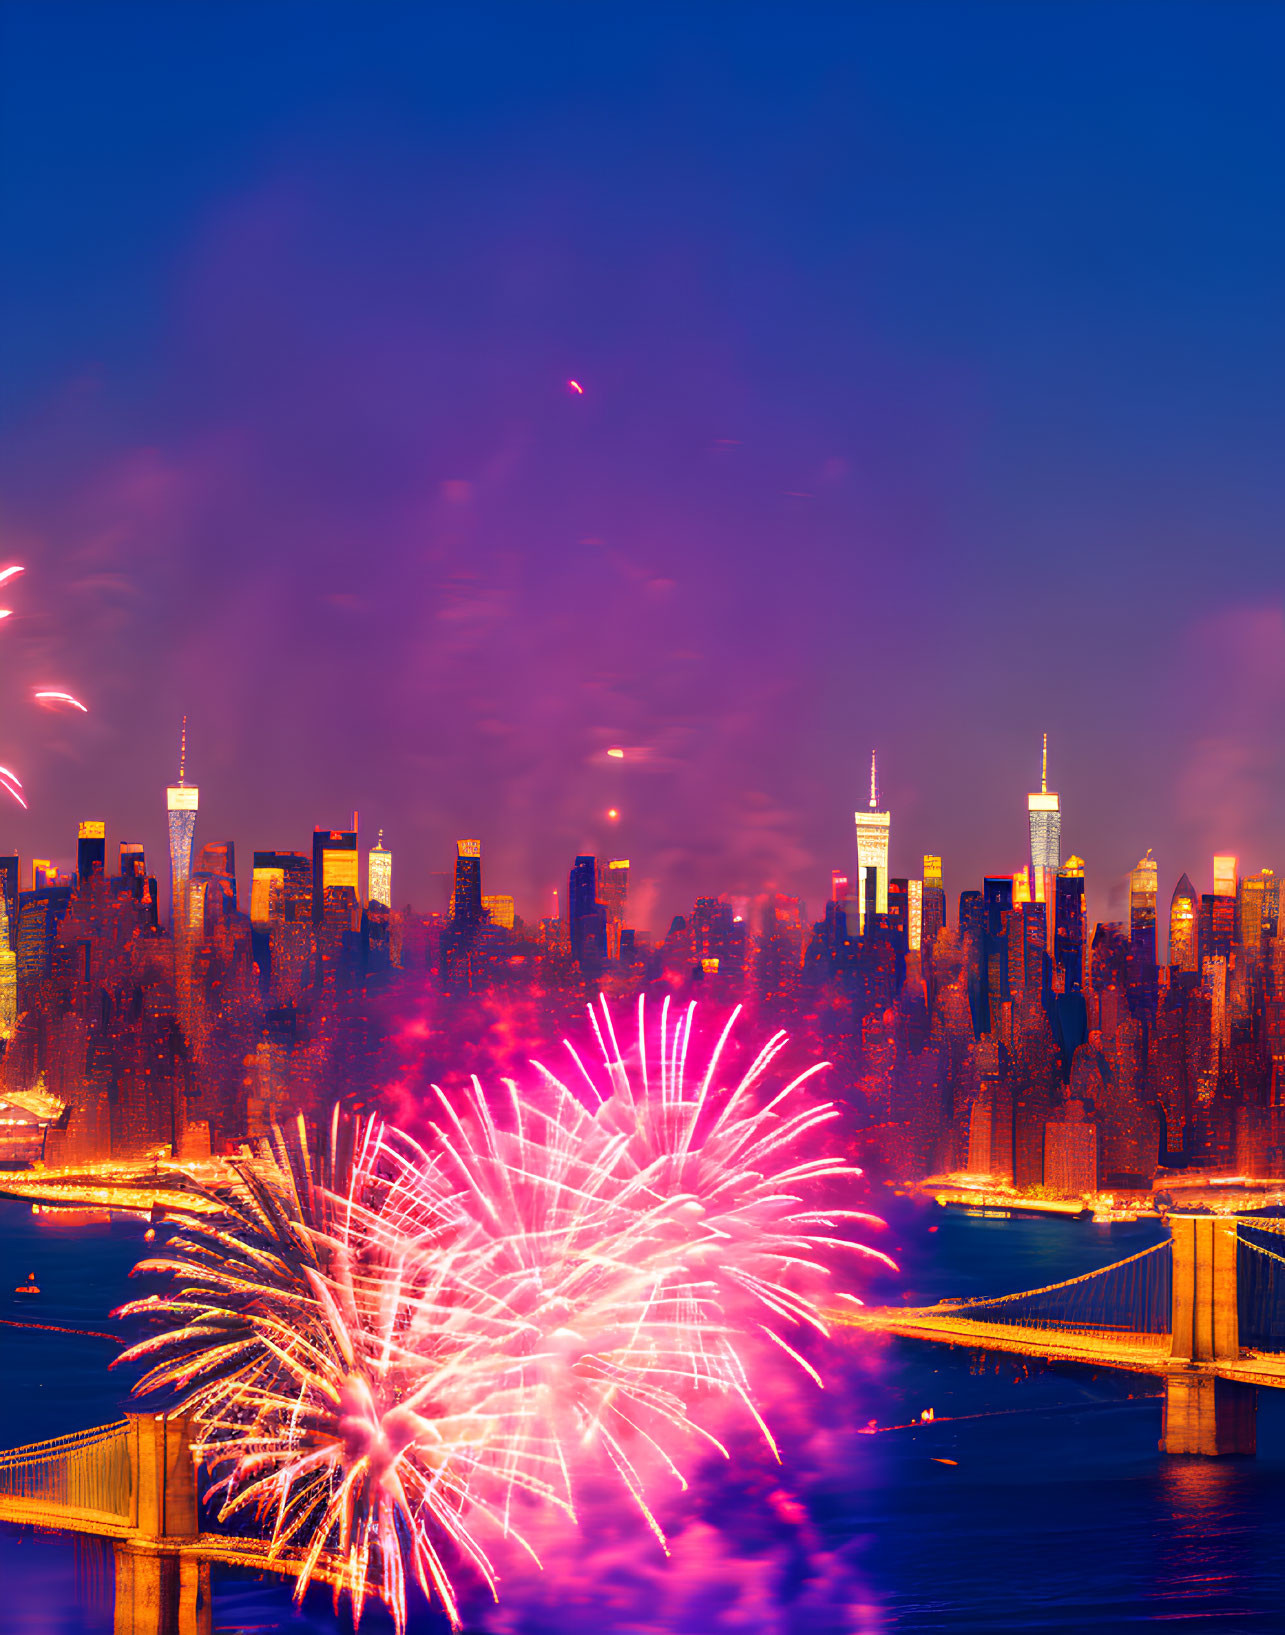 Colorful fireworks illuminate city skyline at dusk